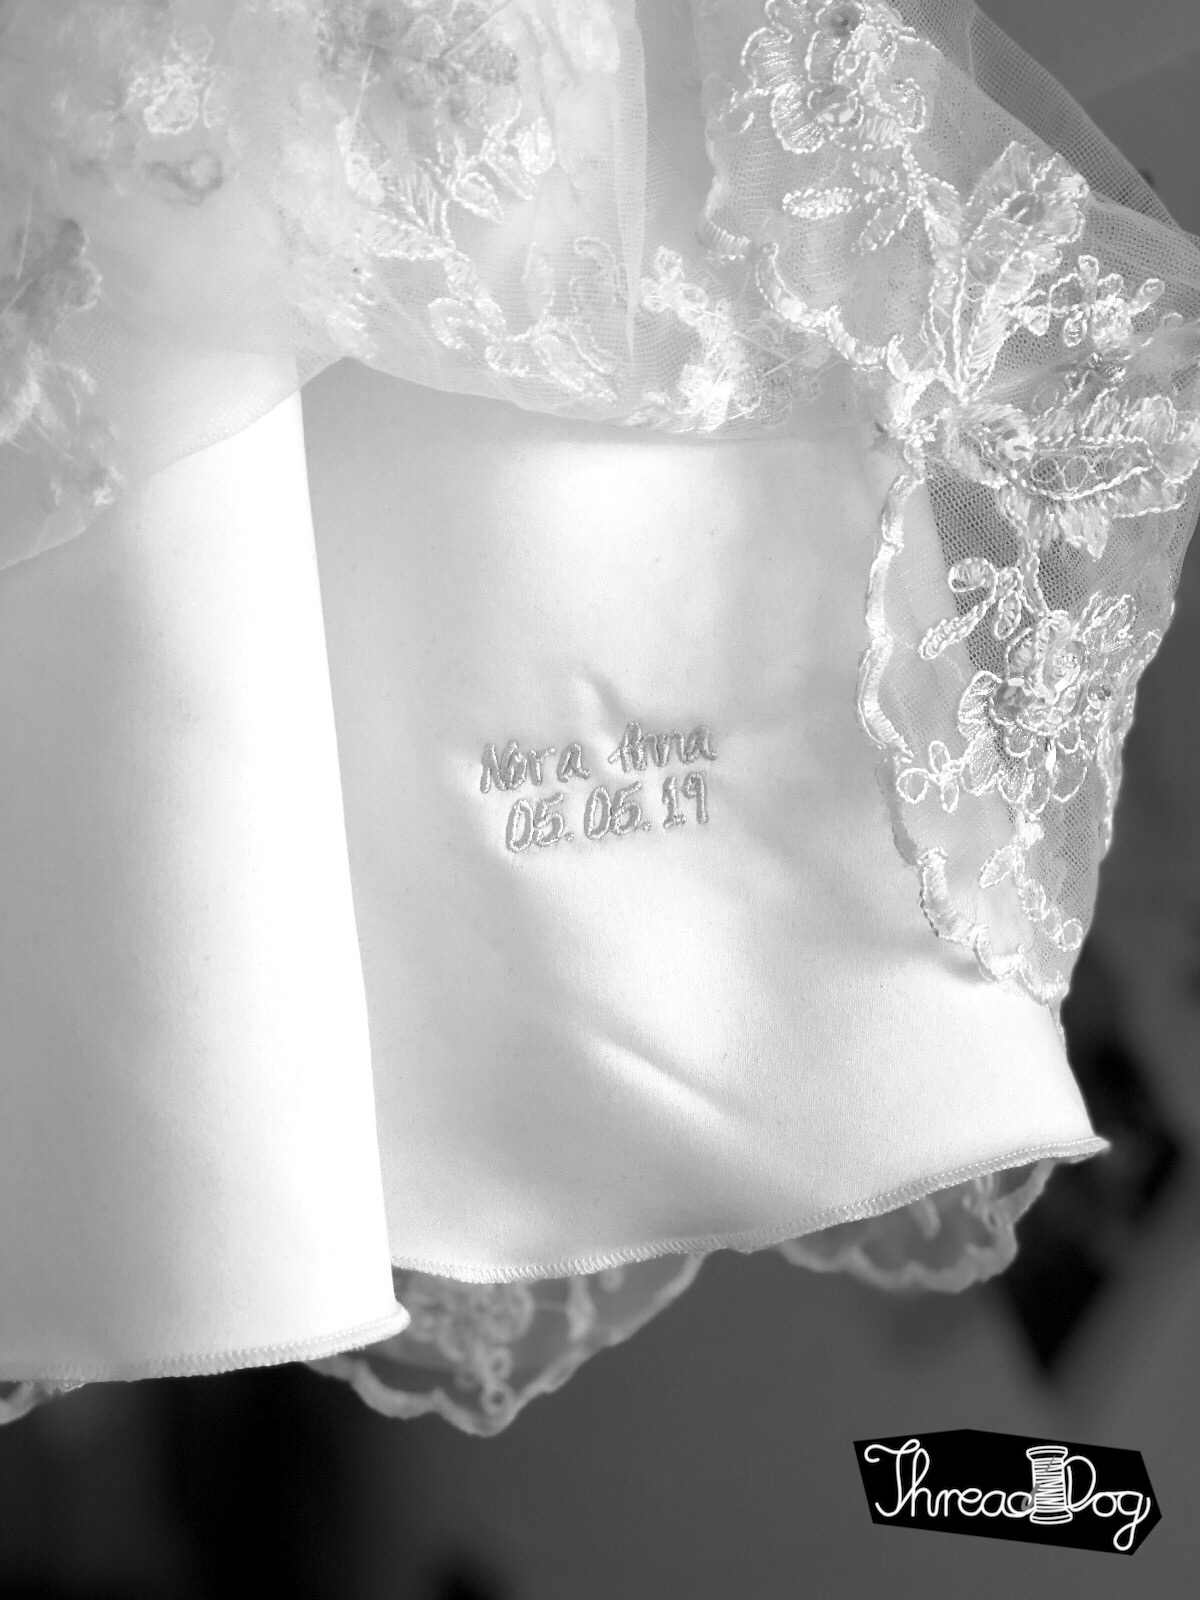 Taufkleid, entstanden aus einem ehemaligen Brautkleid. Im Bildausschnitt ist eine auf dem ersten Unterrock versteckte Stickerei zu sehen. Name des Täuflings und das Datum.